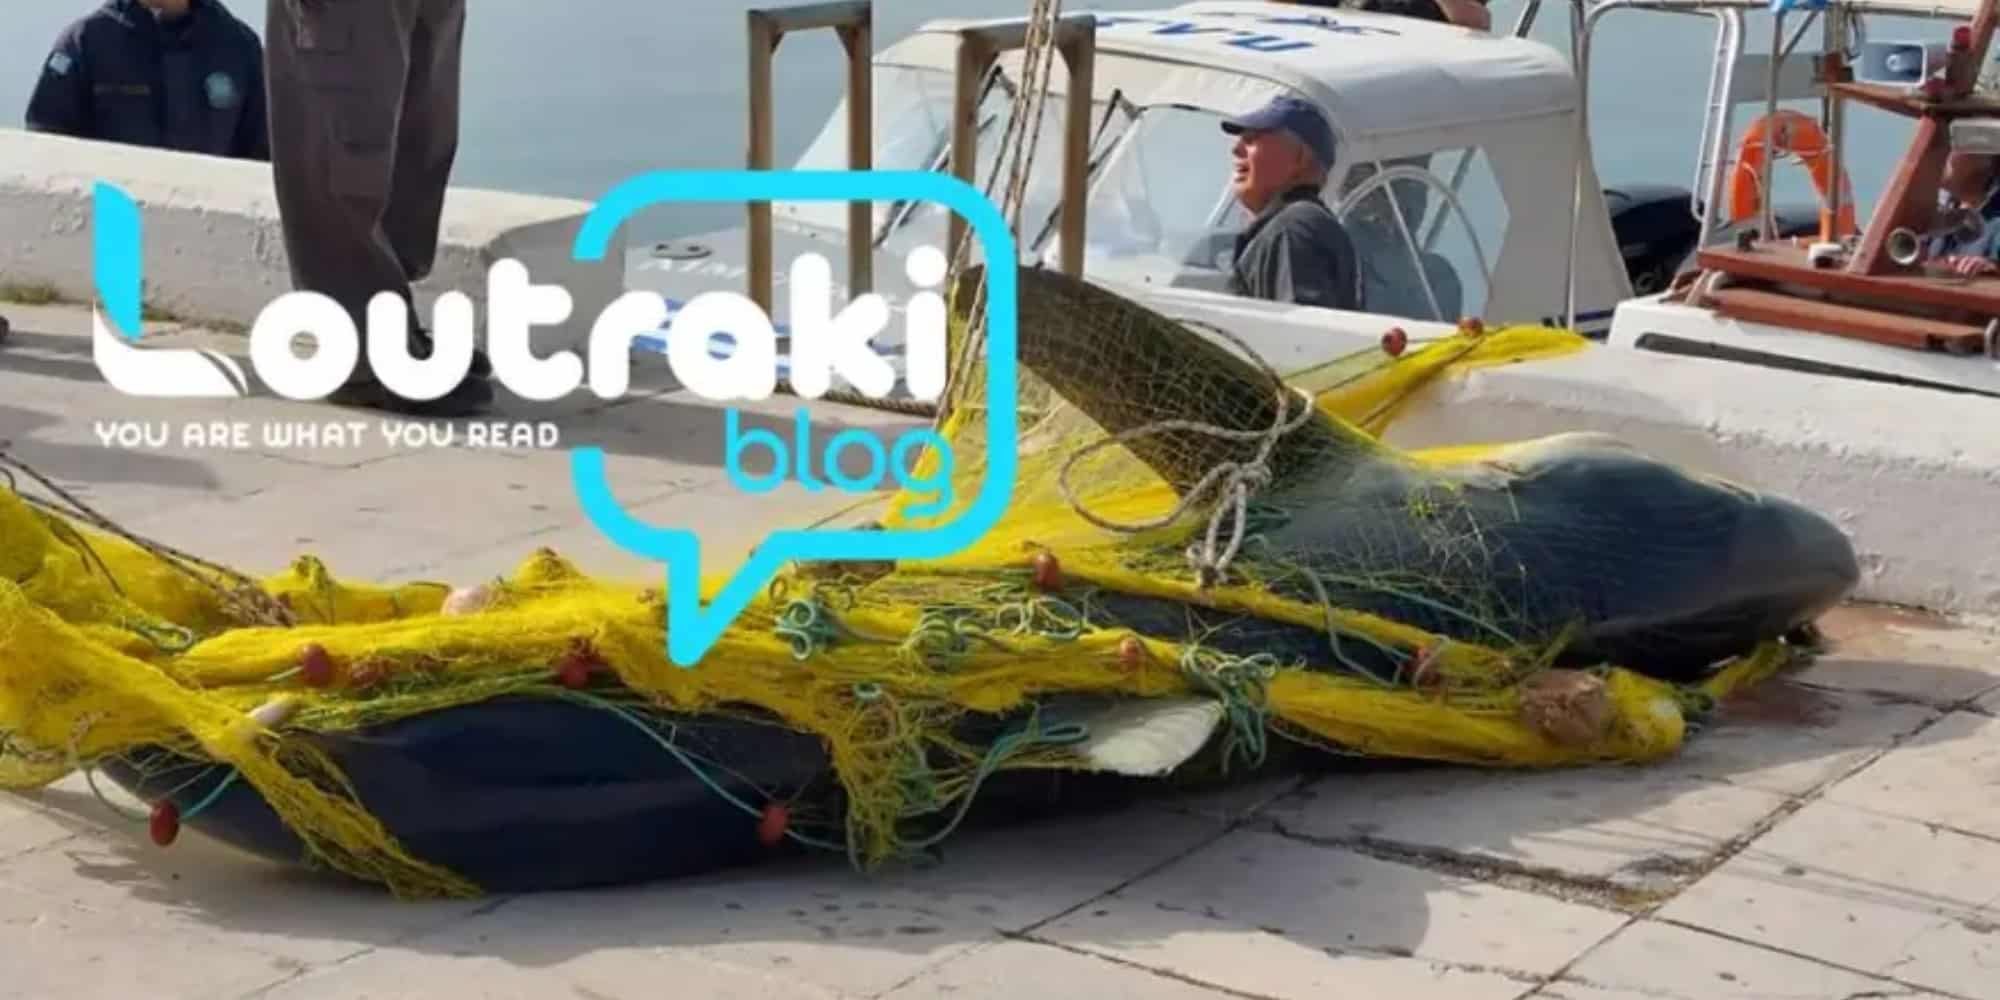 Καρχαρίας τριών μέτρων πιάστηκε στα δίχτυα ψαρά στο Λουτράκι Κορινθίας (εικόνες & βίντεο)